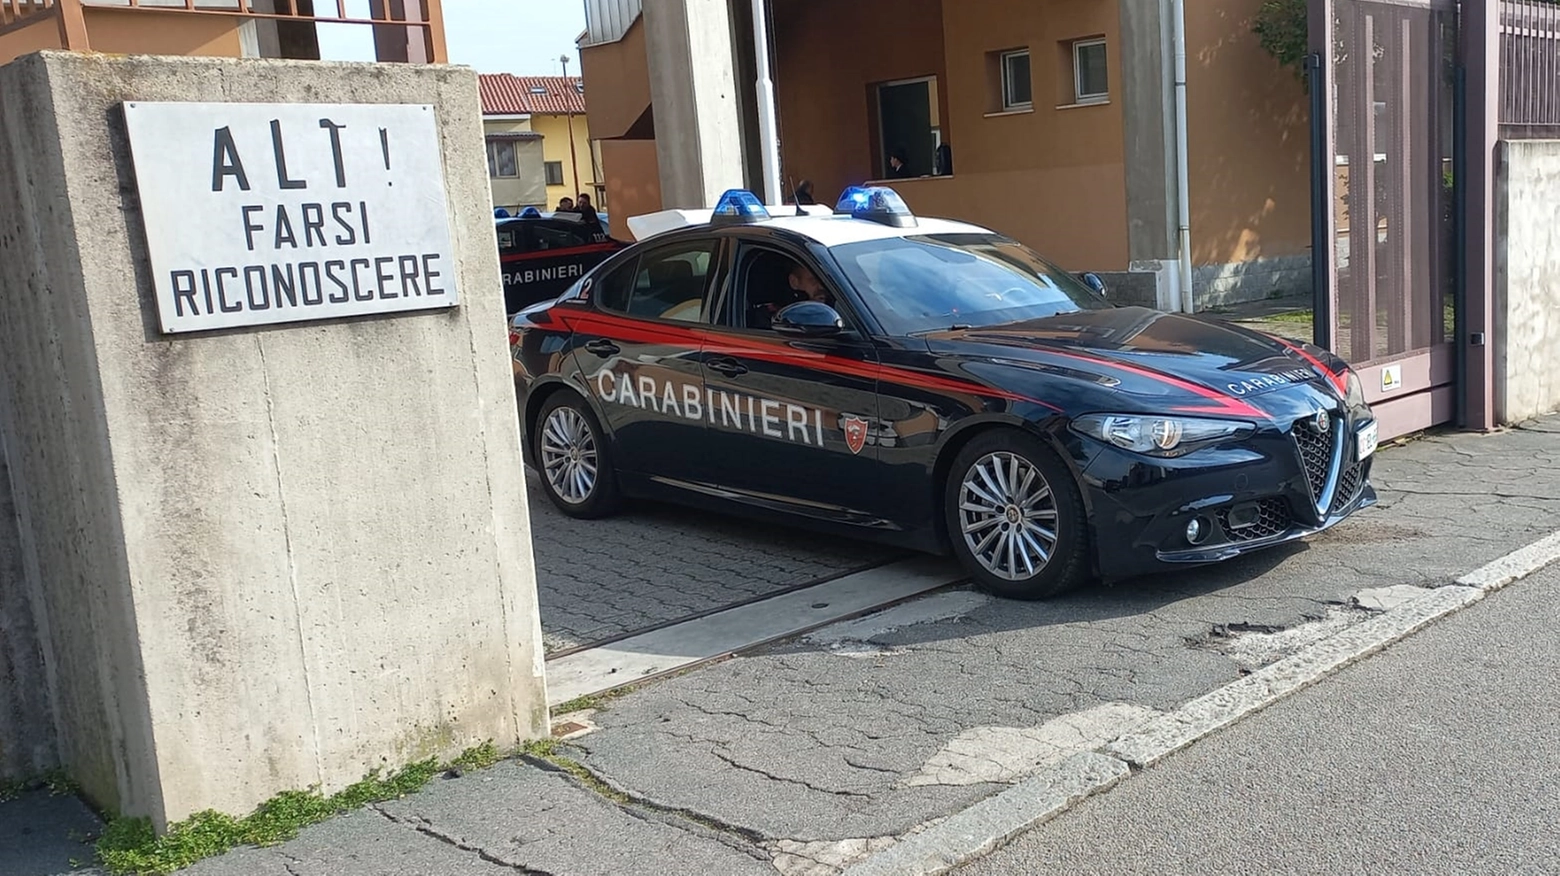 I Carabinieri hanno eseguito un controllo nel locale trovando 93 grammi di hashish. Riscontrare anche numerose violazioni alle norme di sicurezza per 77mila euro di sanzioni complessive